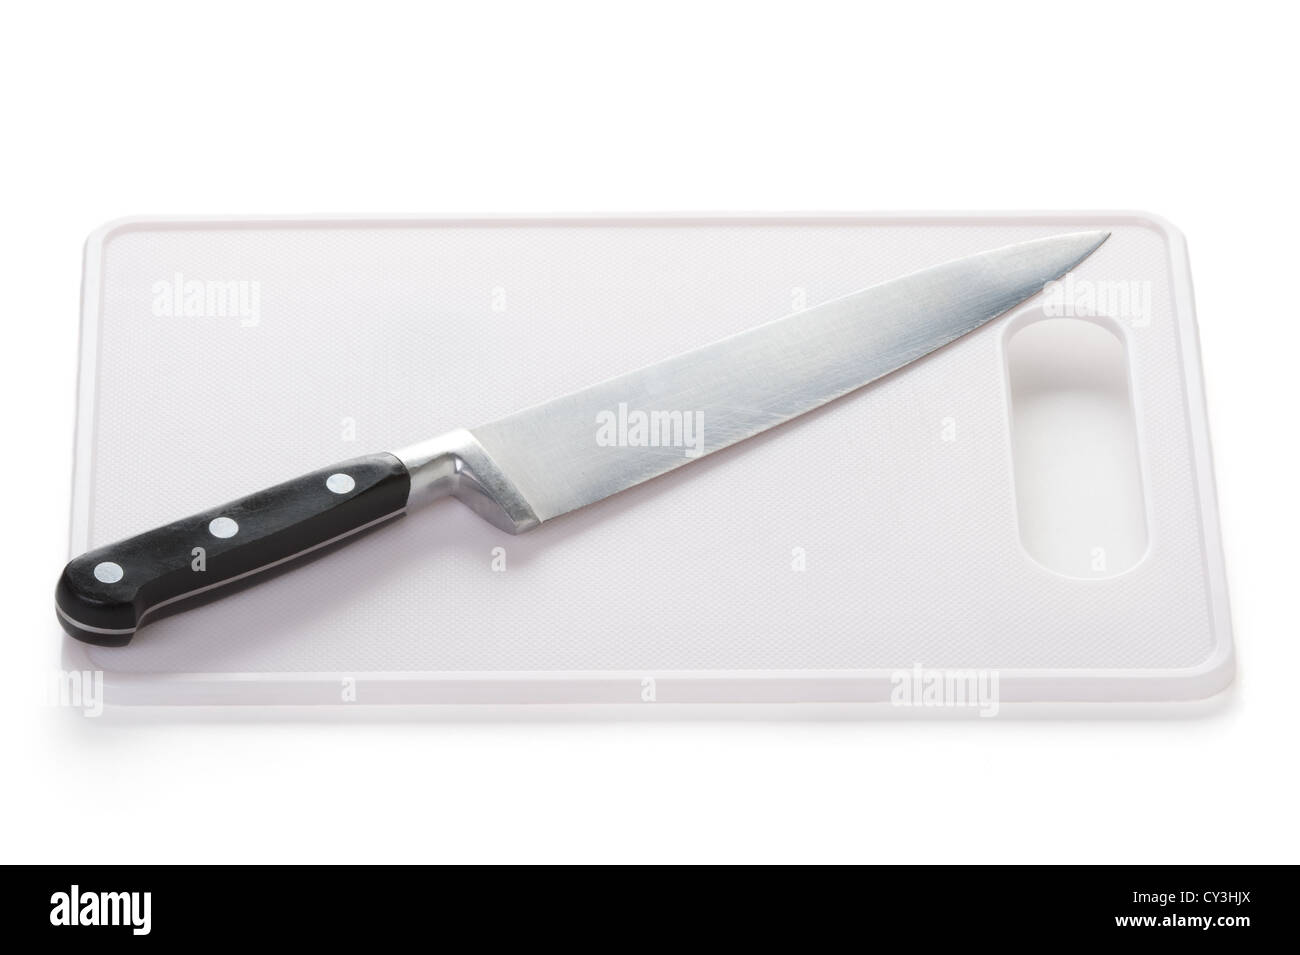 Couteau de cuisine en acier inoxydable et planche à découper pour préparer la nourriture isolated on white Banque D'Images